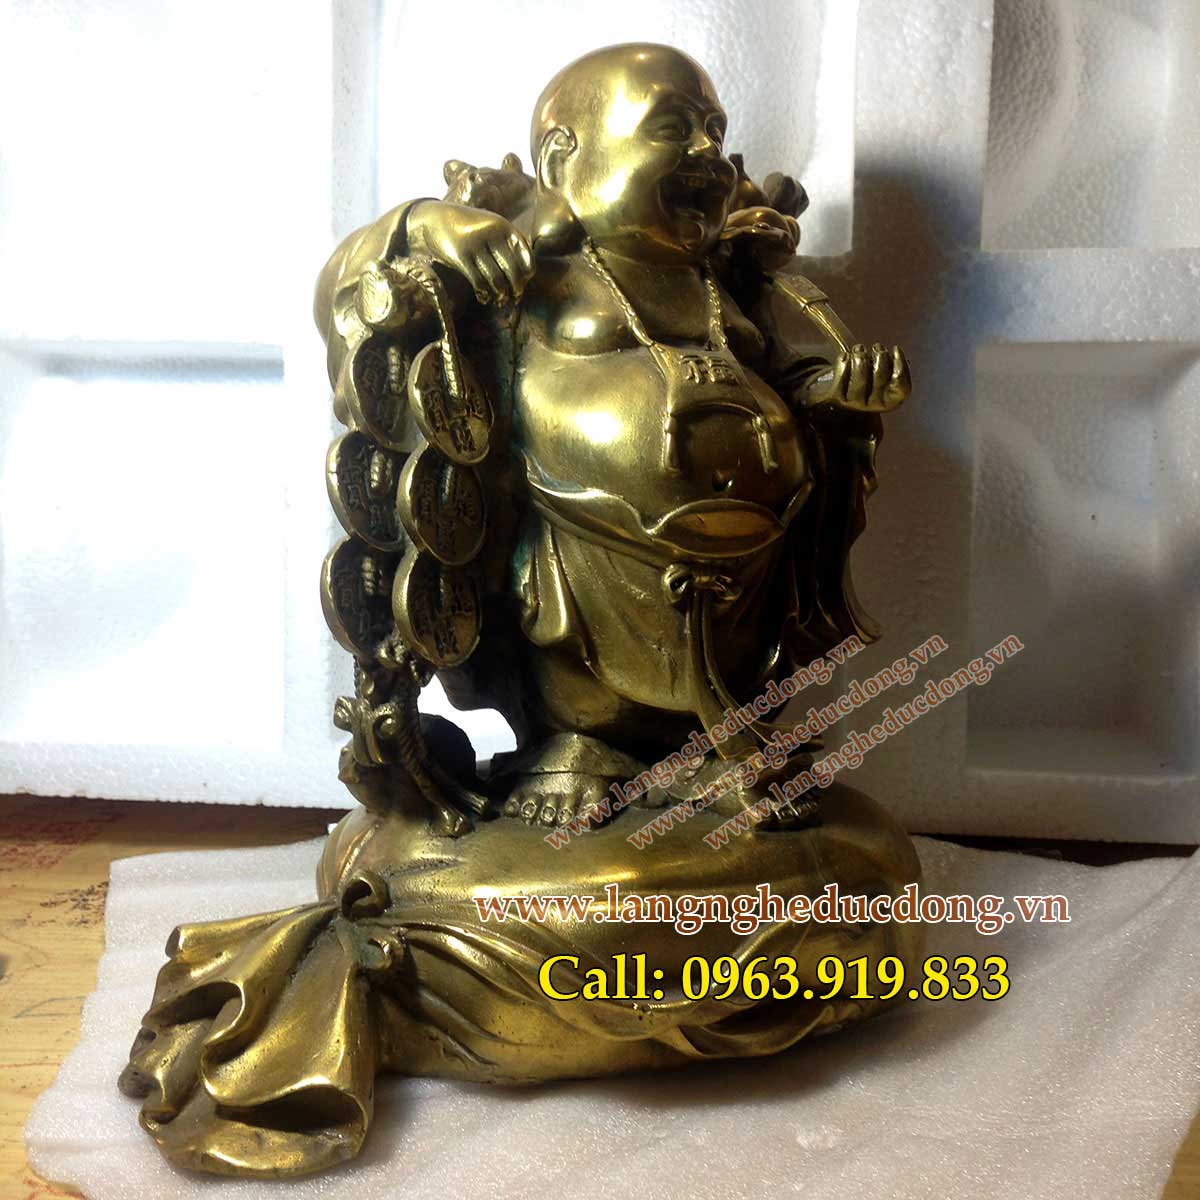 langngheducdong.vn - Tượng Phật Di Lạc gánh vàng cao 25cm, mẫu tượng dilac gánh vàng